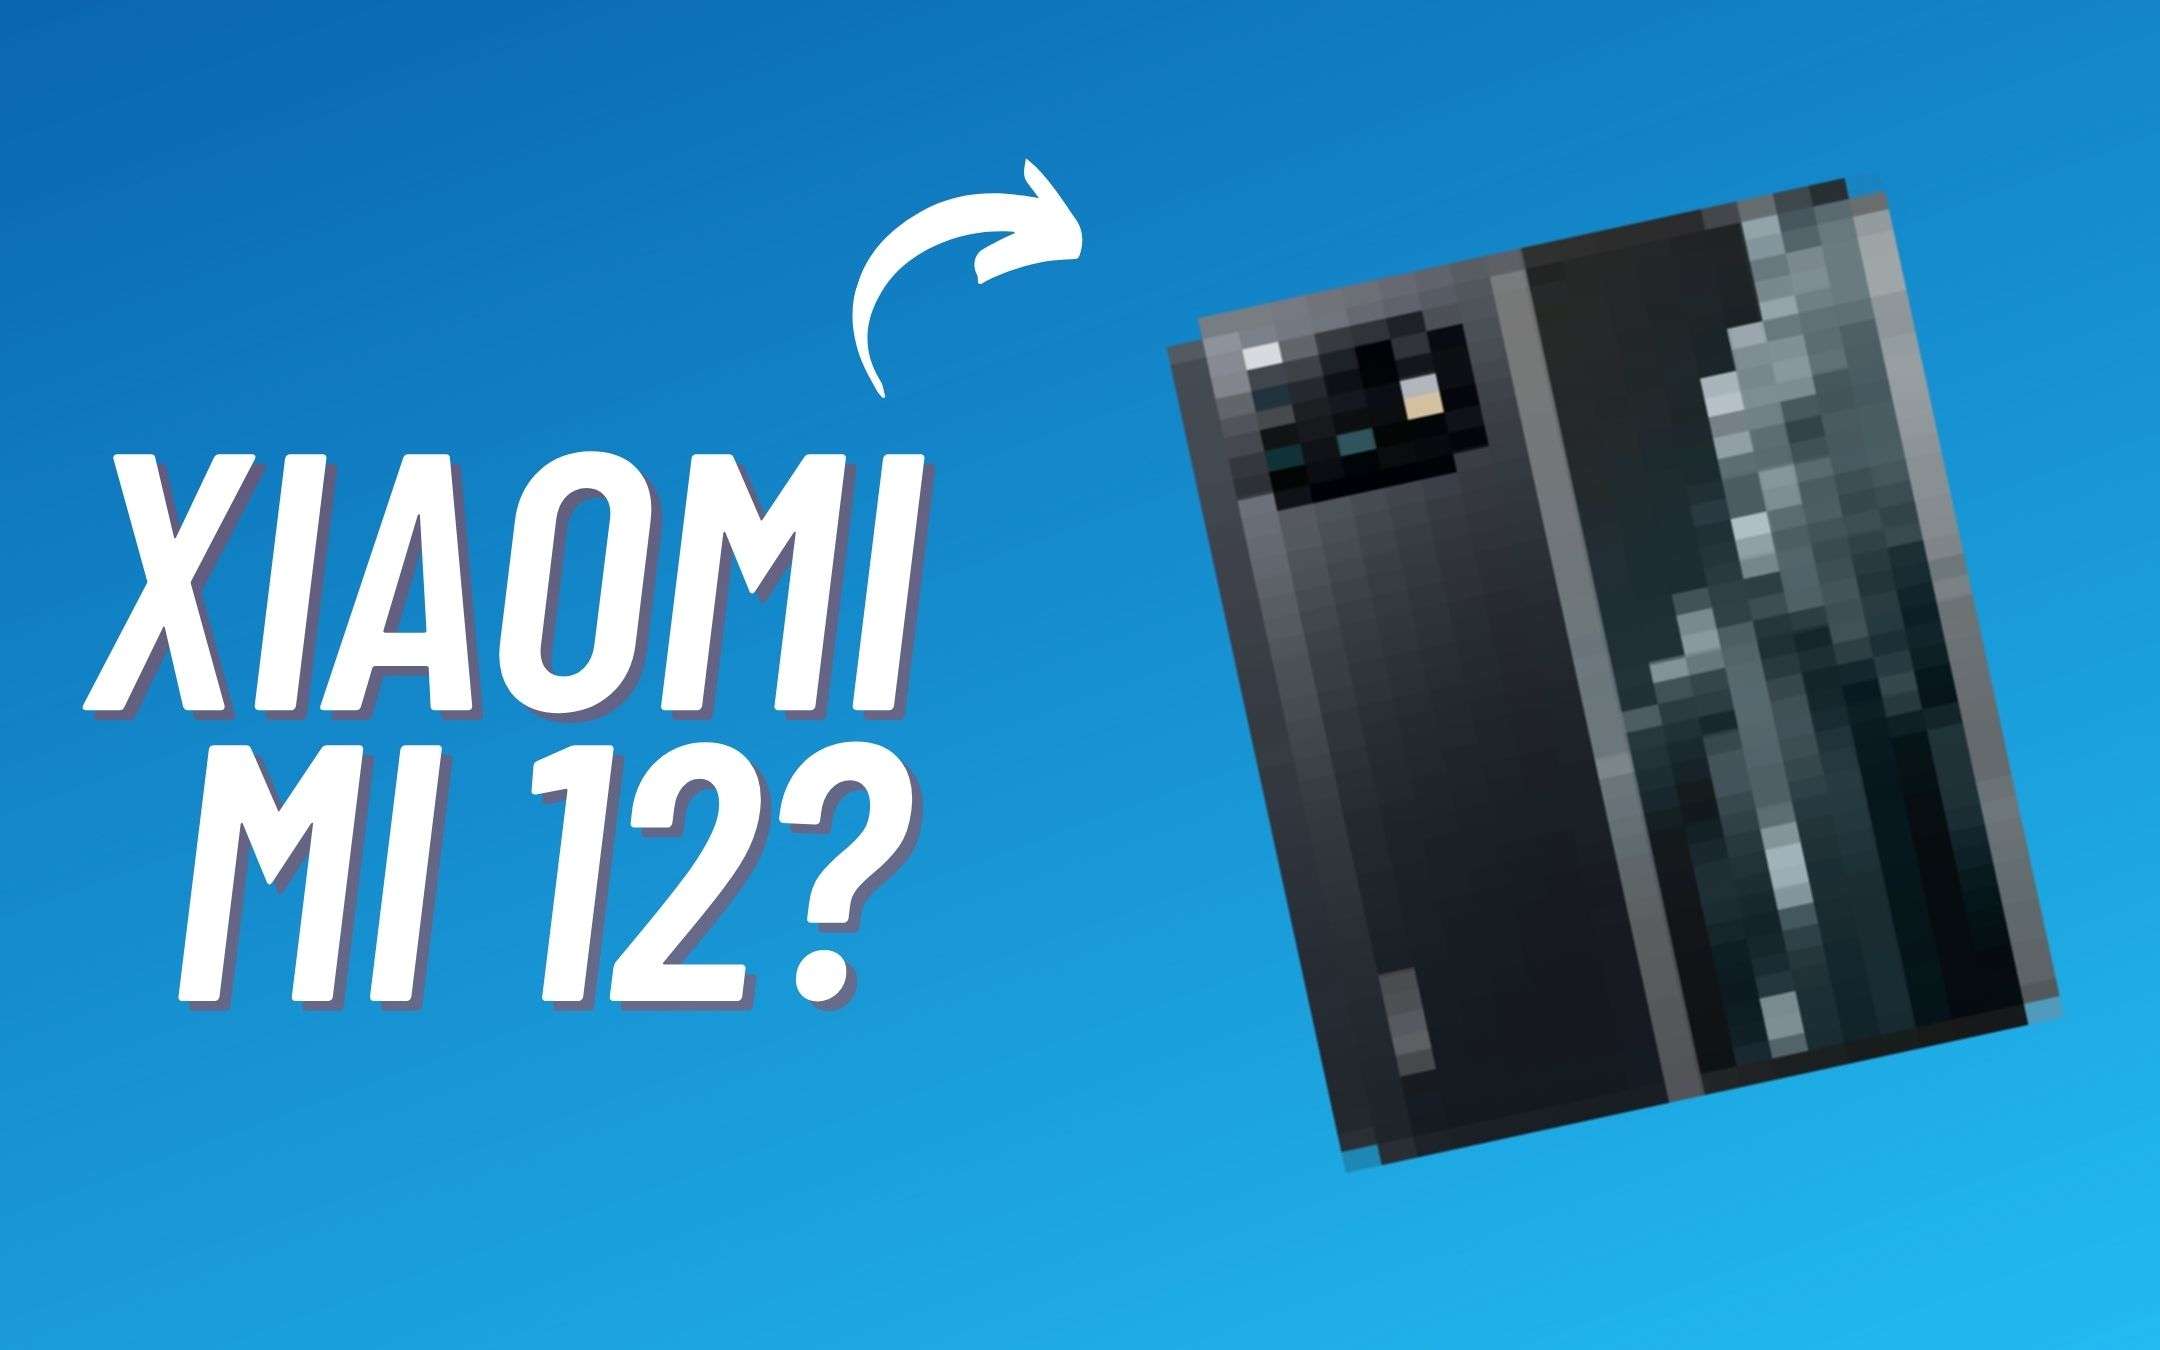 Xiaomi 12 avrà la MIUI 13 con Android 12 (RUMOR)